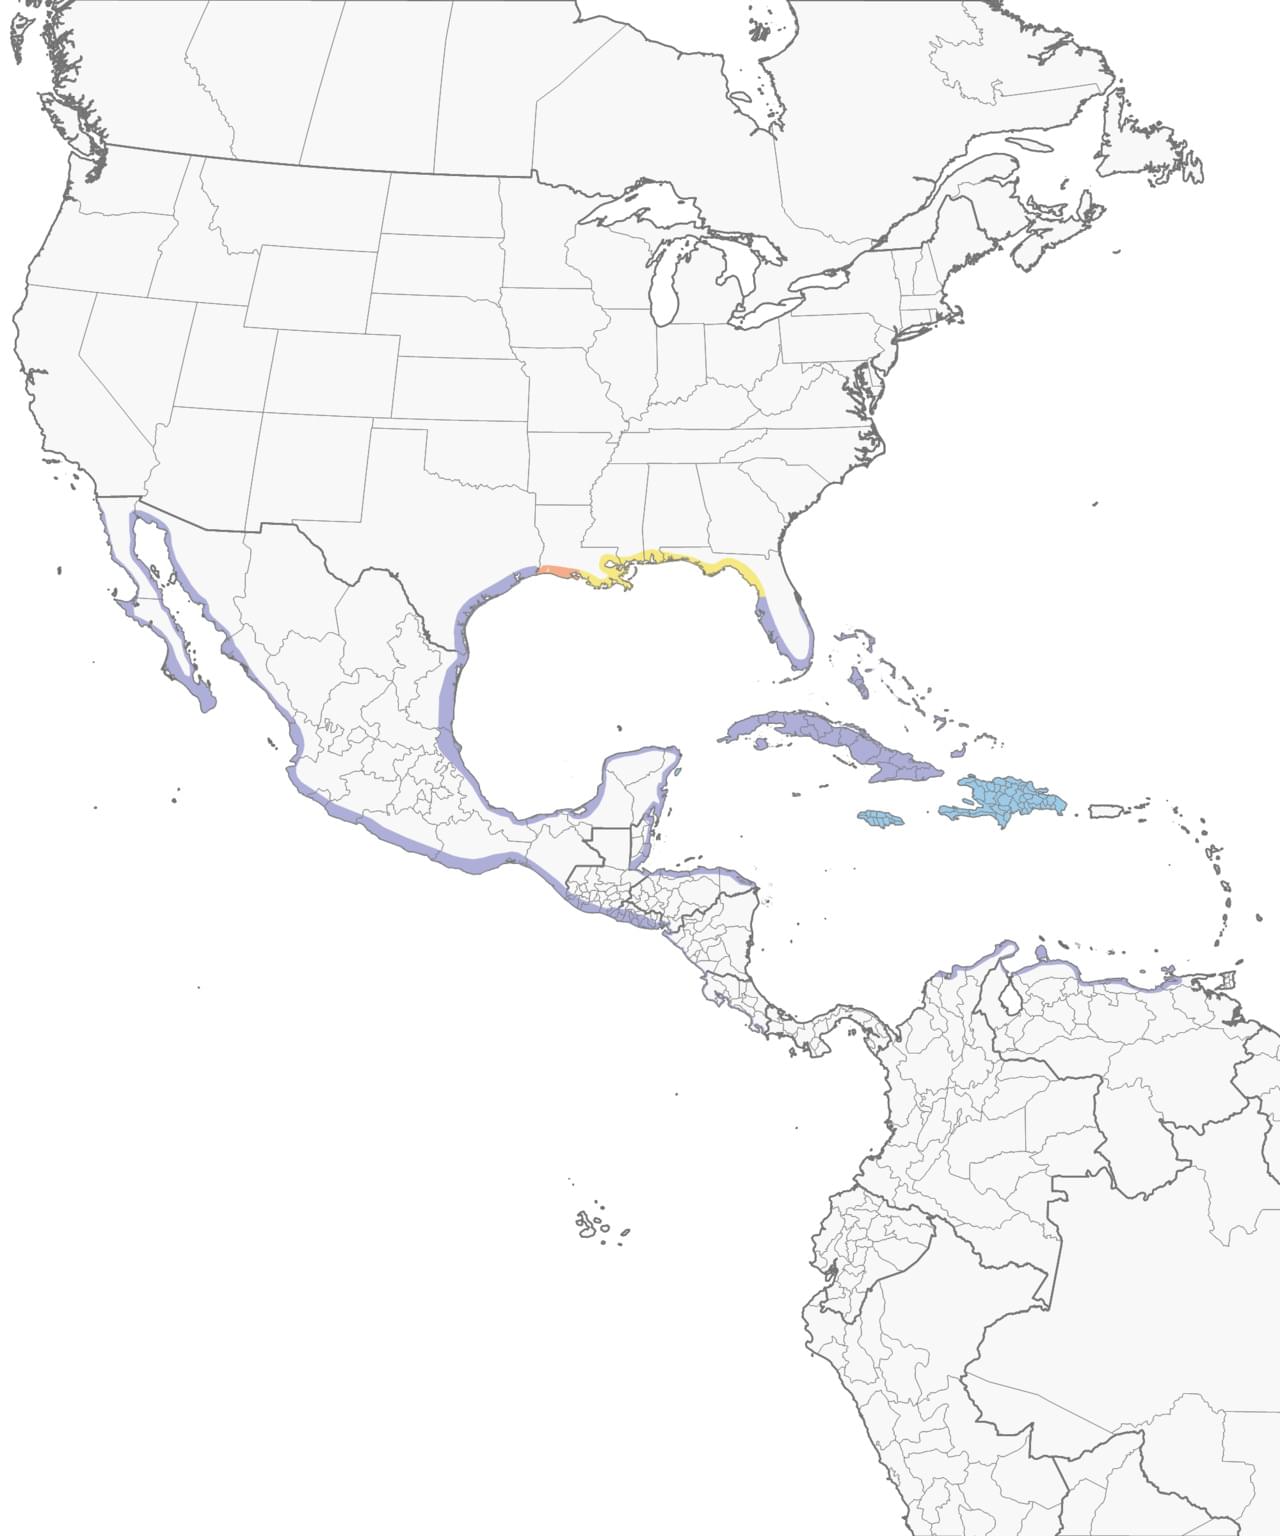 Range Map for Reddish Egret